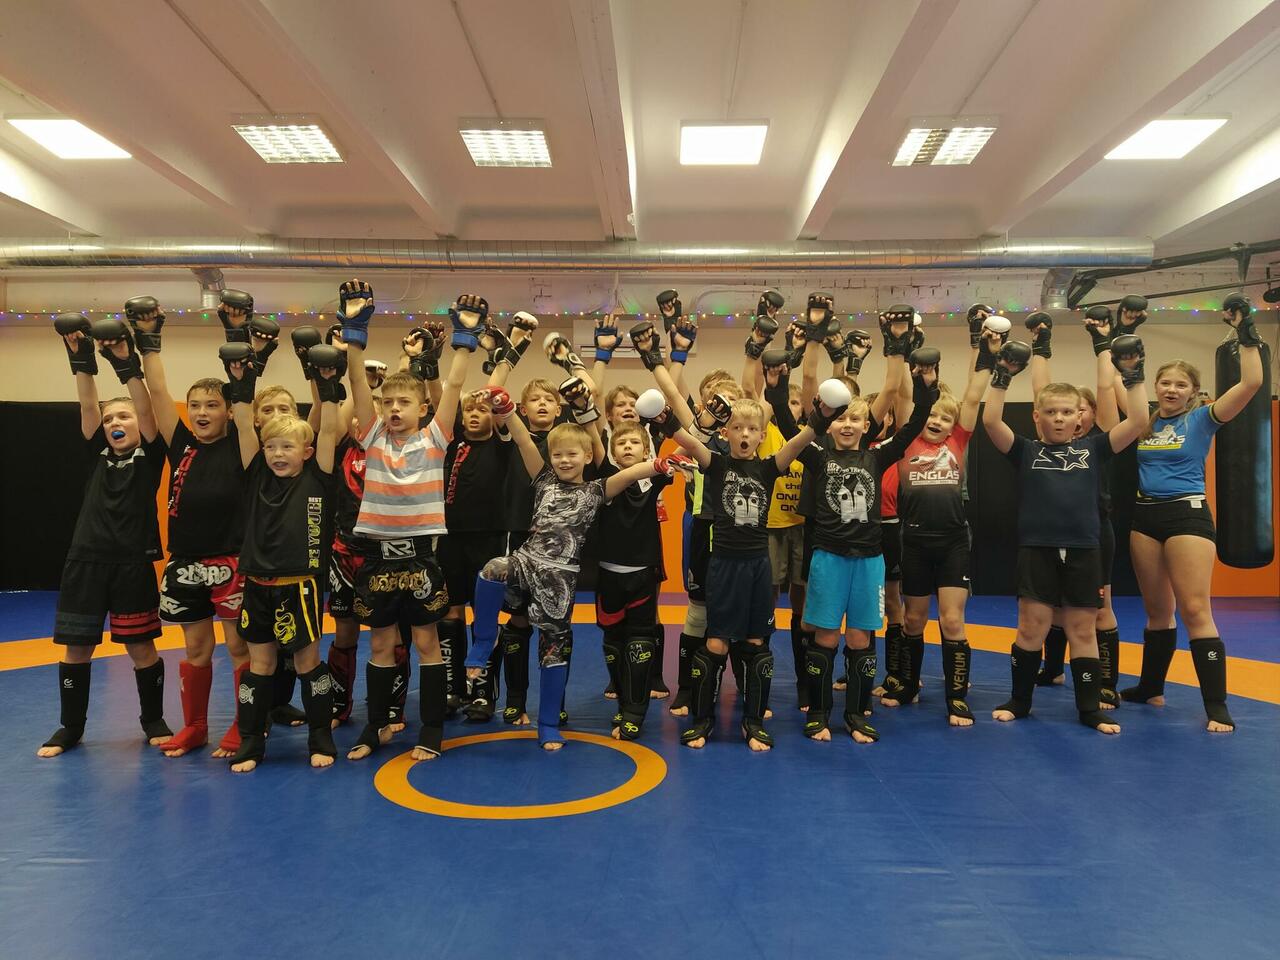 9-12-aastaste noorte treeningpäev - spordiklubi TOKON (Tallinn), Vabavõitlusklubi RAMM (Tallinn) ja spordiklubi Englas (Tartu) koos Tartus treenimas (detsember 2021).